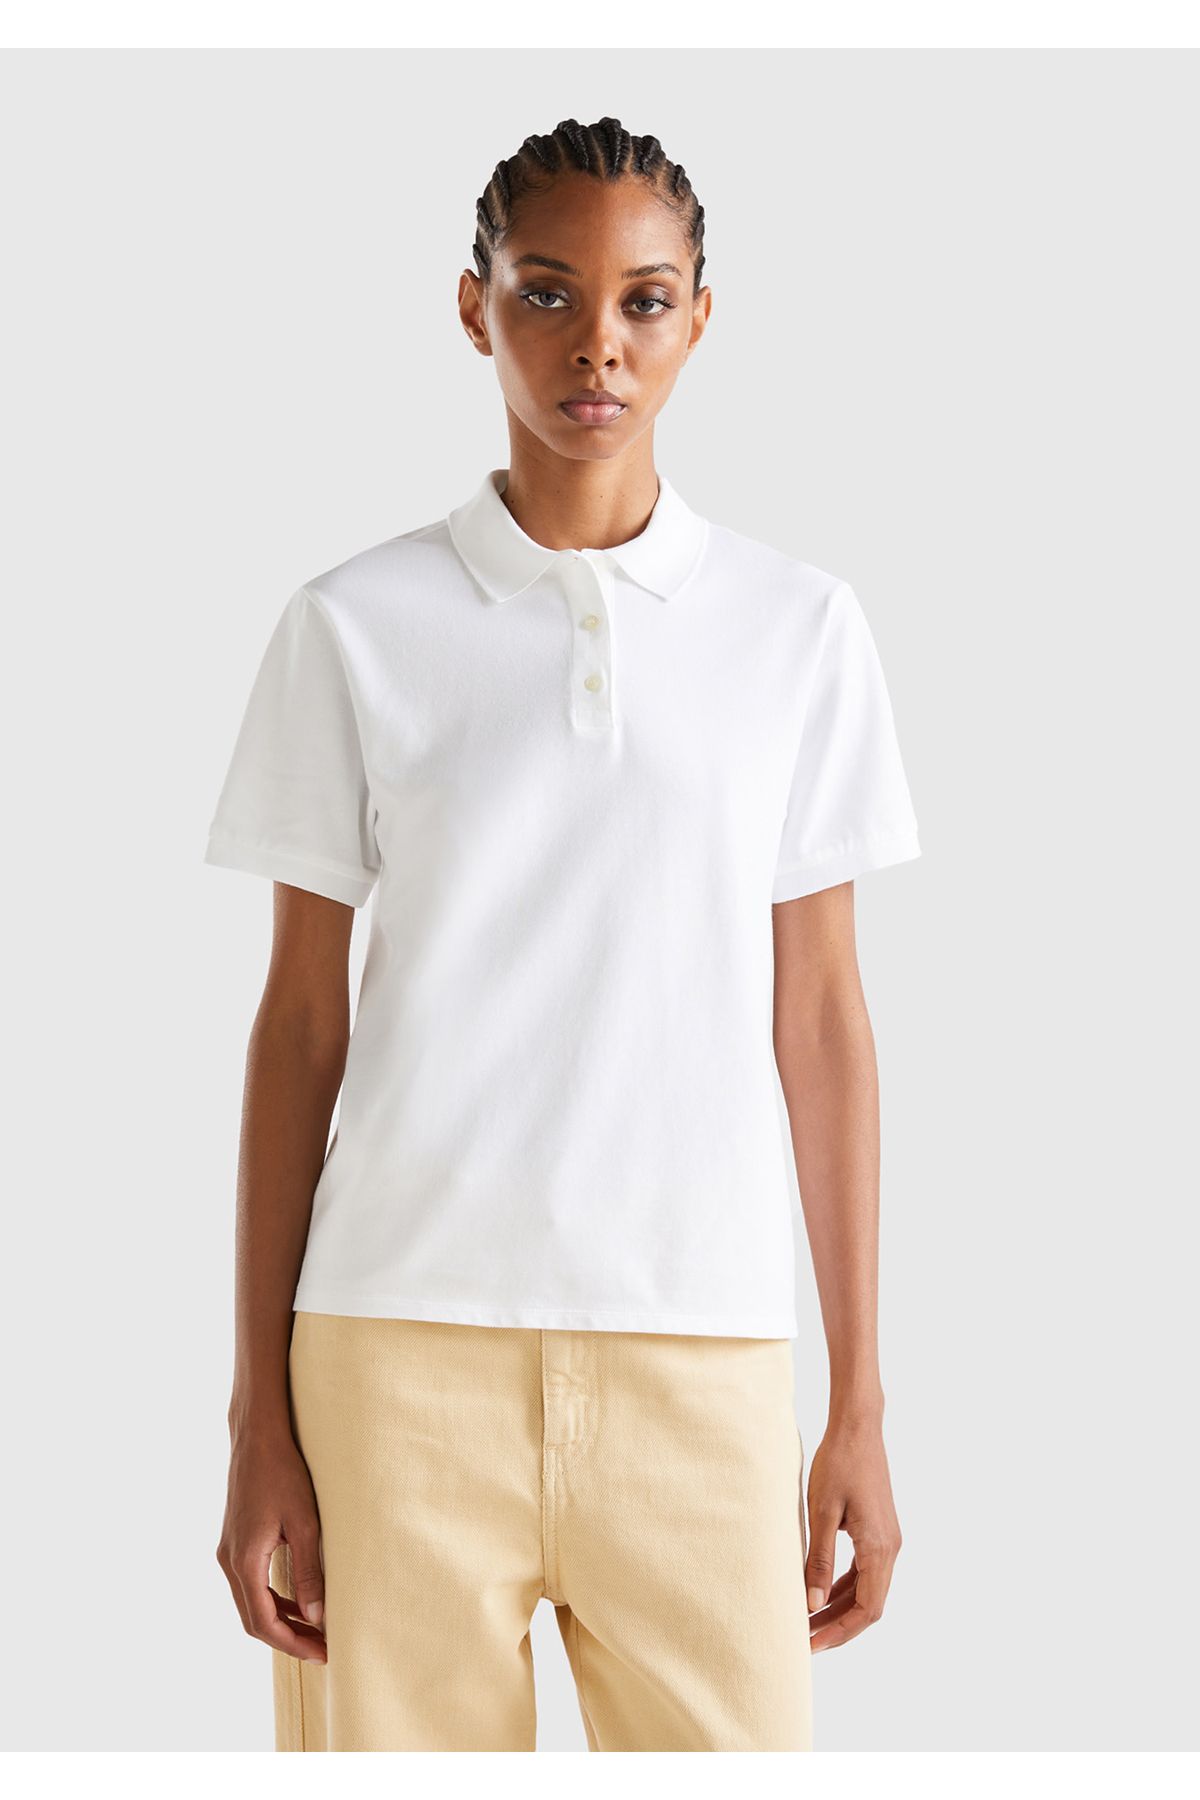 United Colors of Benetton Kadın Beyaz Streç Pamuklu Sol Altı Logo Baskılı Polo T-Shirt